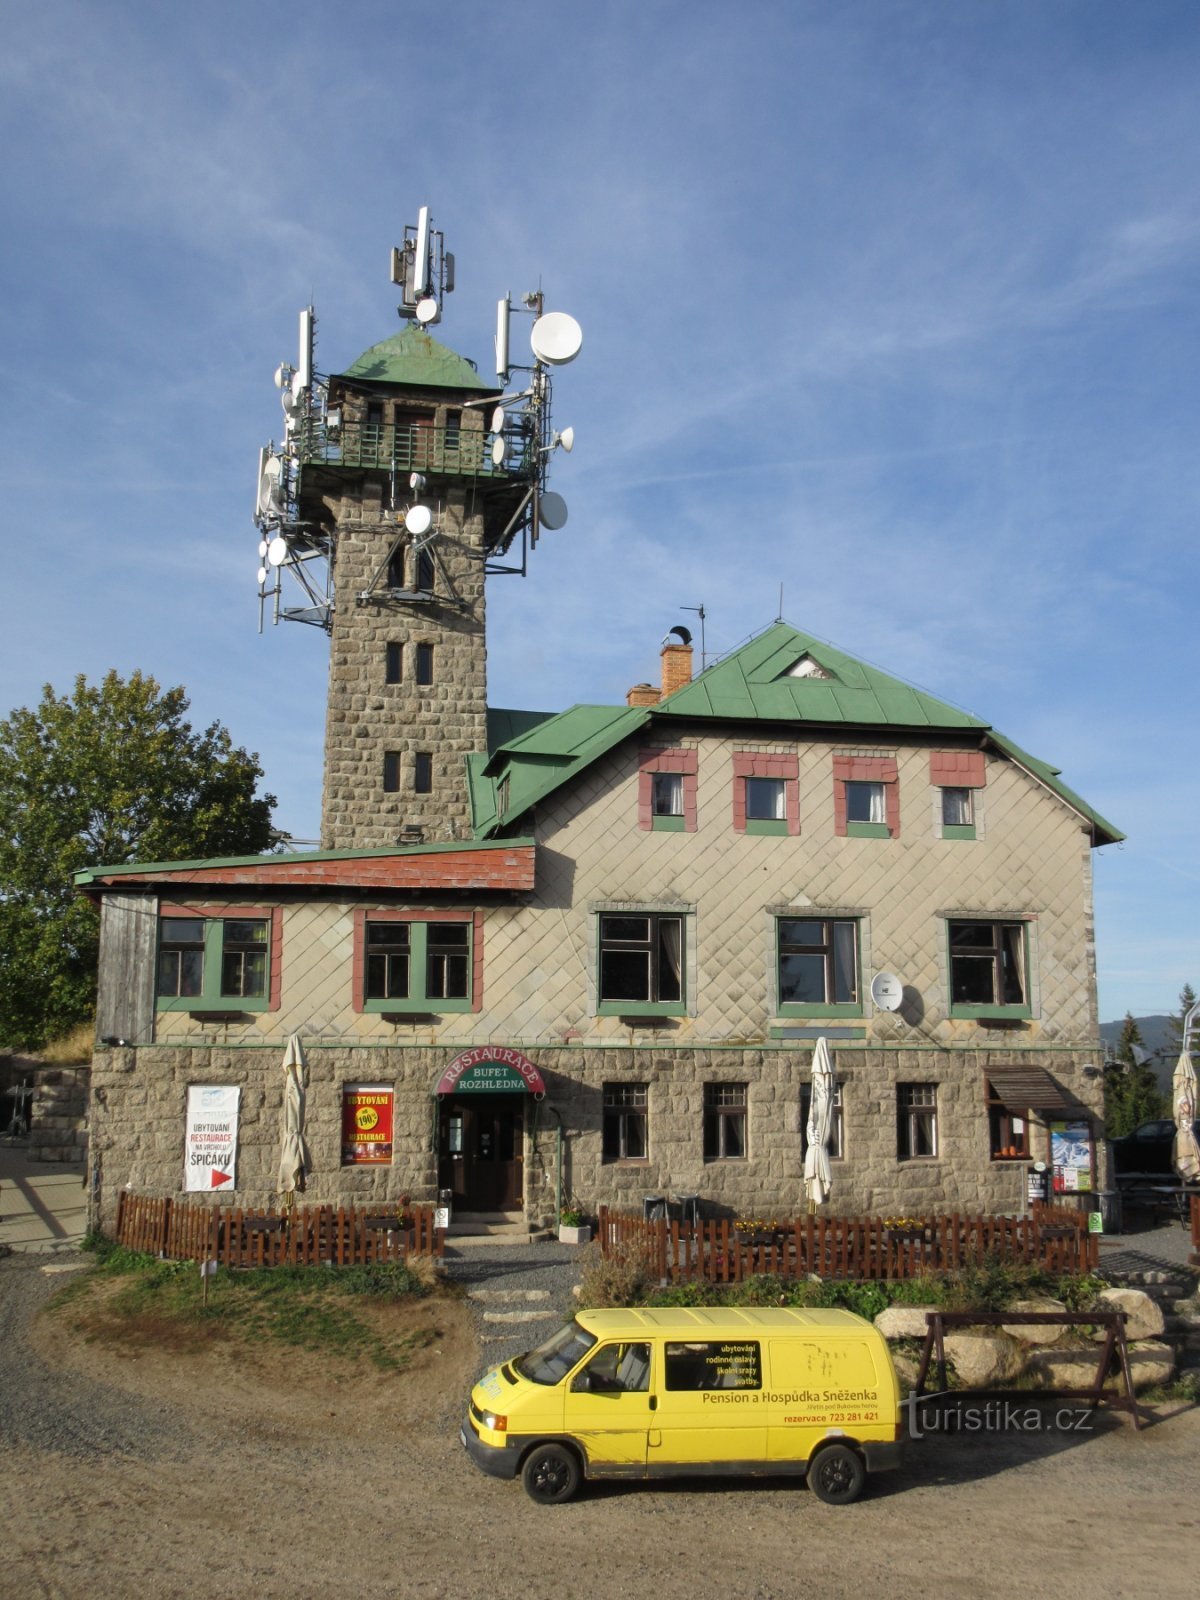 Lookout tower Tanvaldský Špičák on Špičák